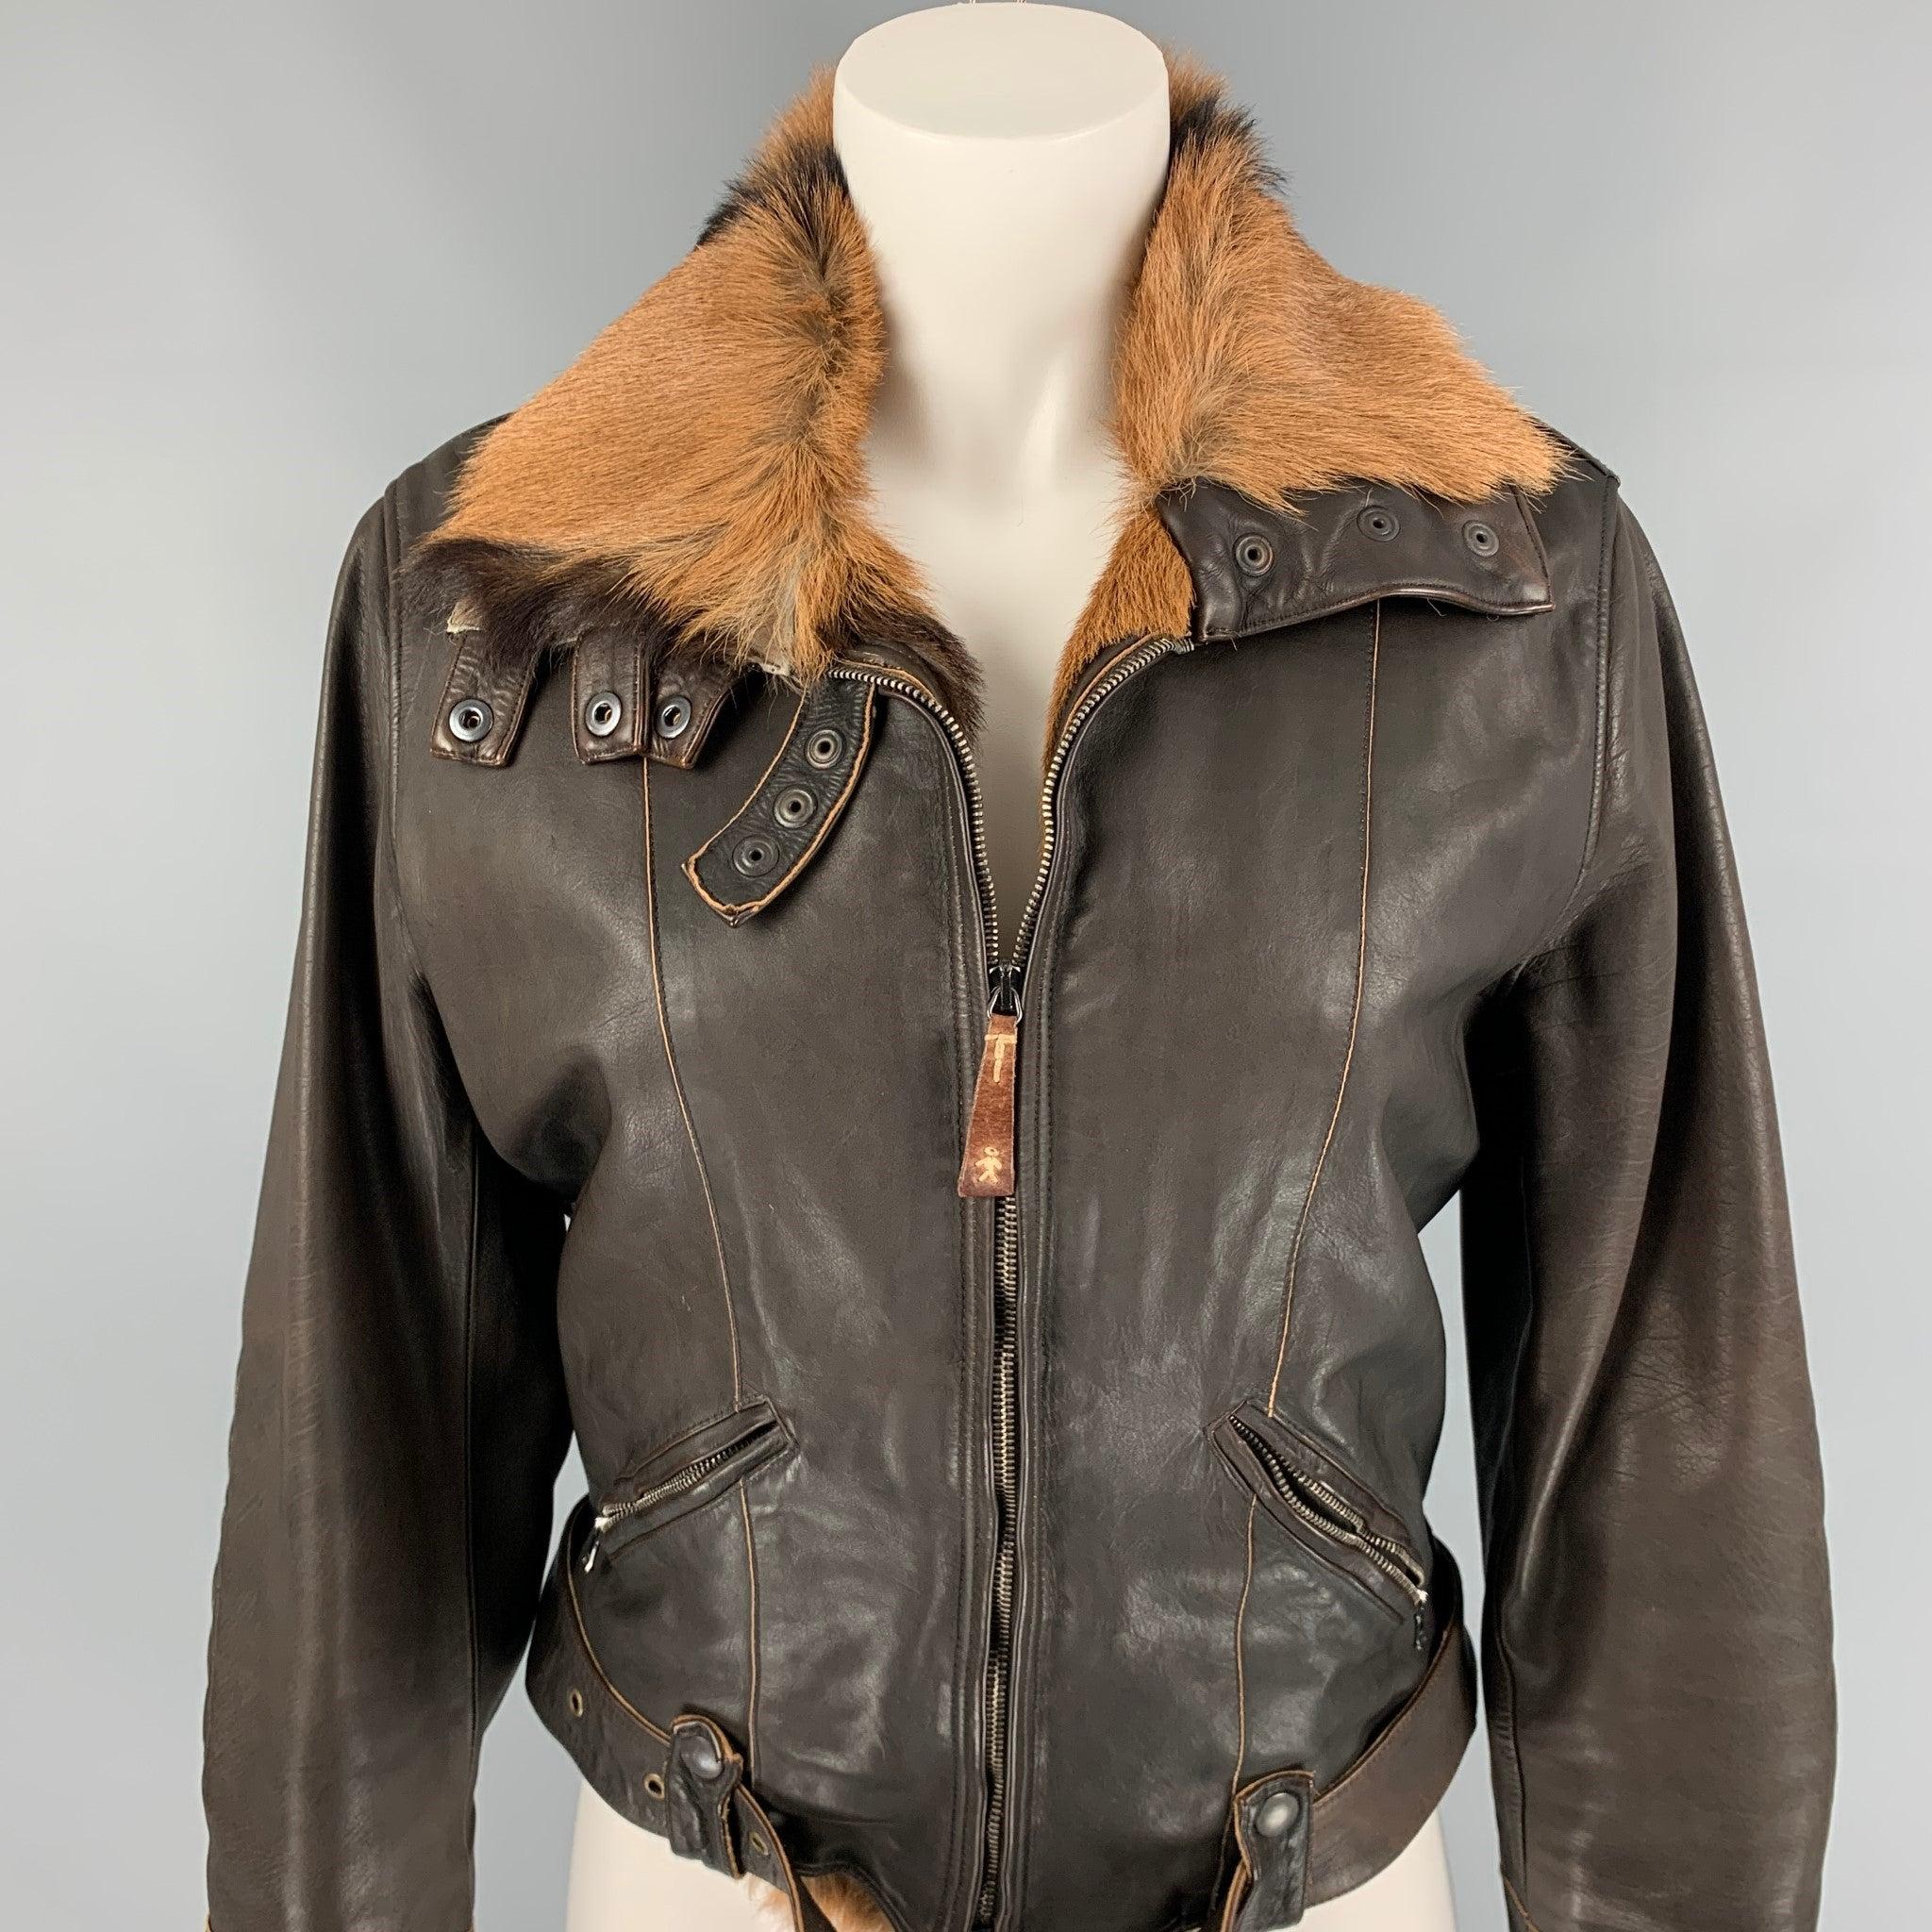 La veste HENRY BEGUELIN est proposée en cuir chamoisé marron et tan et présente un style moto, un col en fourrure, des empiècements matelassés aux coudes, des poches zippées, des boutons-pression et une fermeture à glissière. Fabriquées en